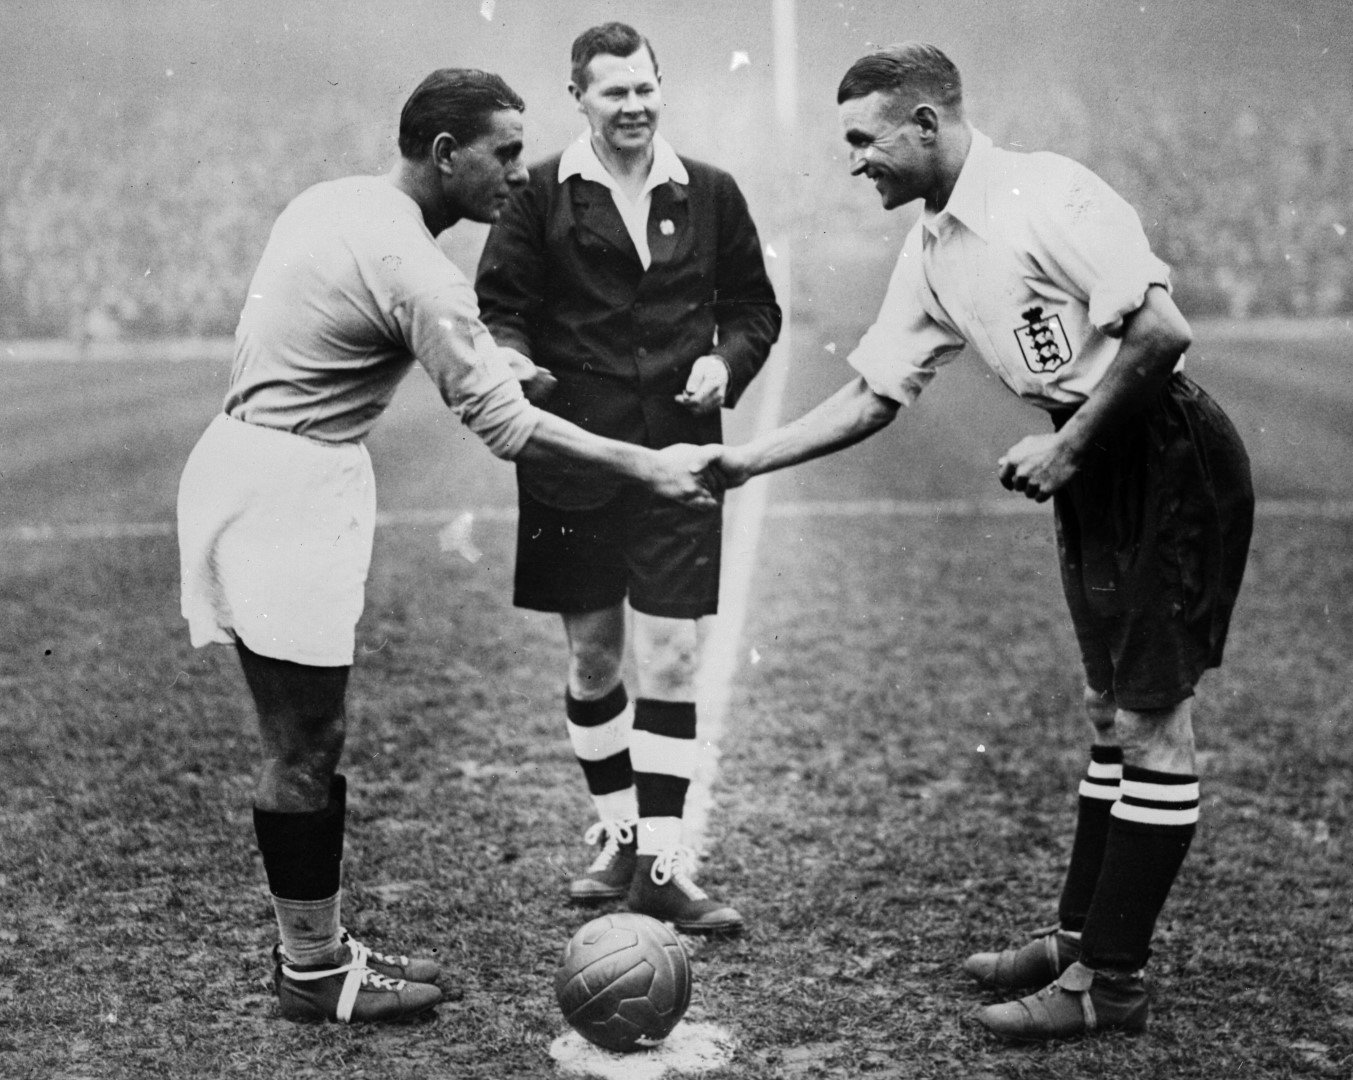 Ноември 1934 г., Лондон. Капитаните на двата отбора Еди Хапгууд и Атилио Ферарис се поздравяват дружелюбно преди мача, който ще се превърна в касапница със счупени крака, ръце и нос. 